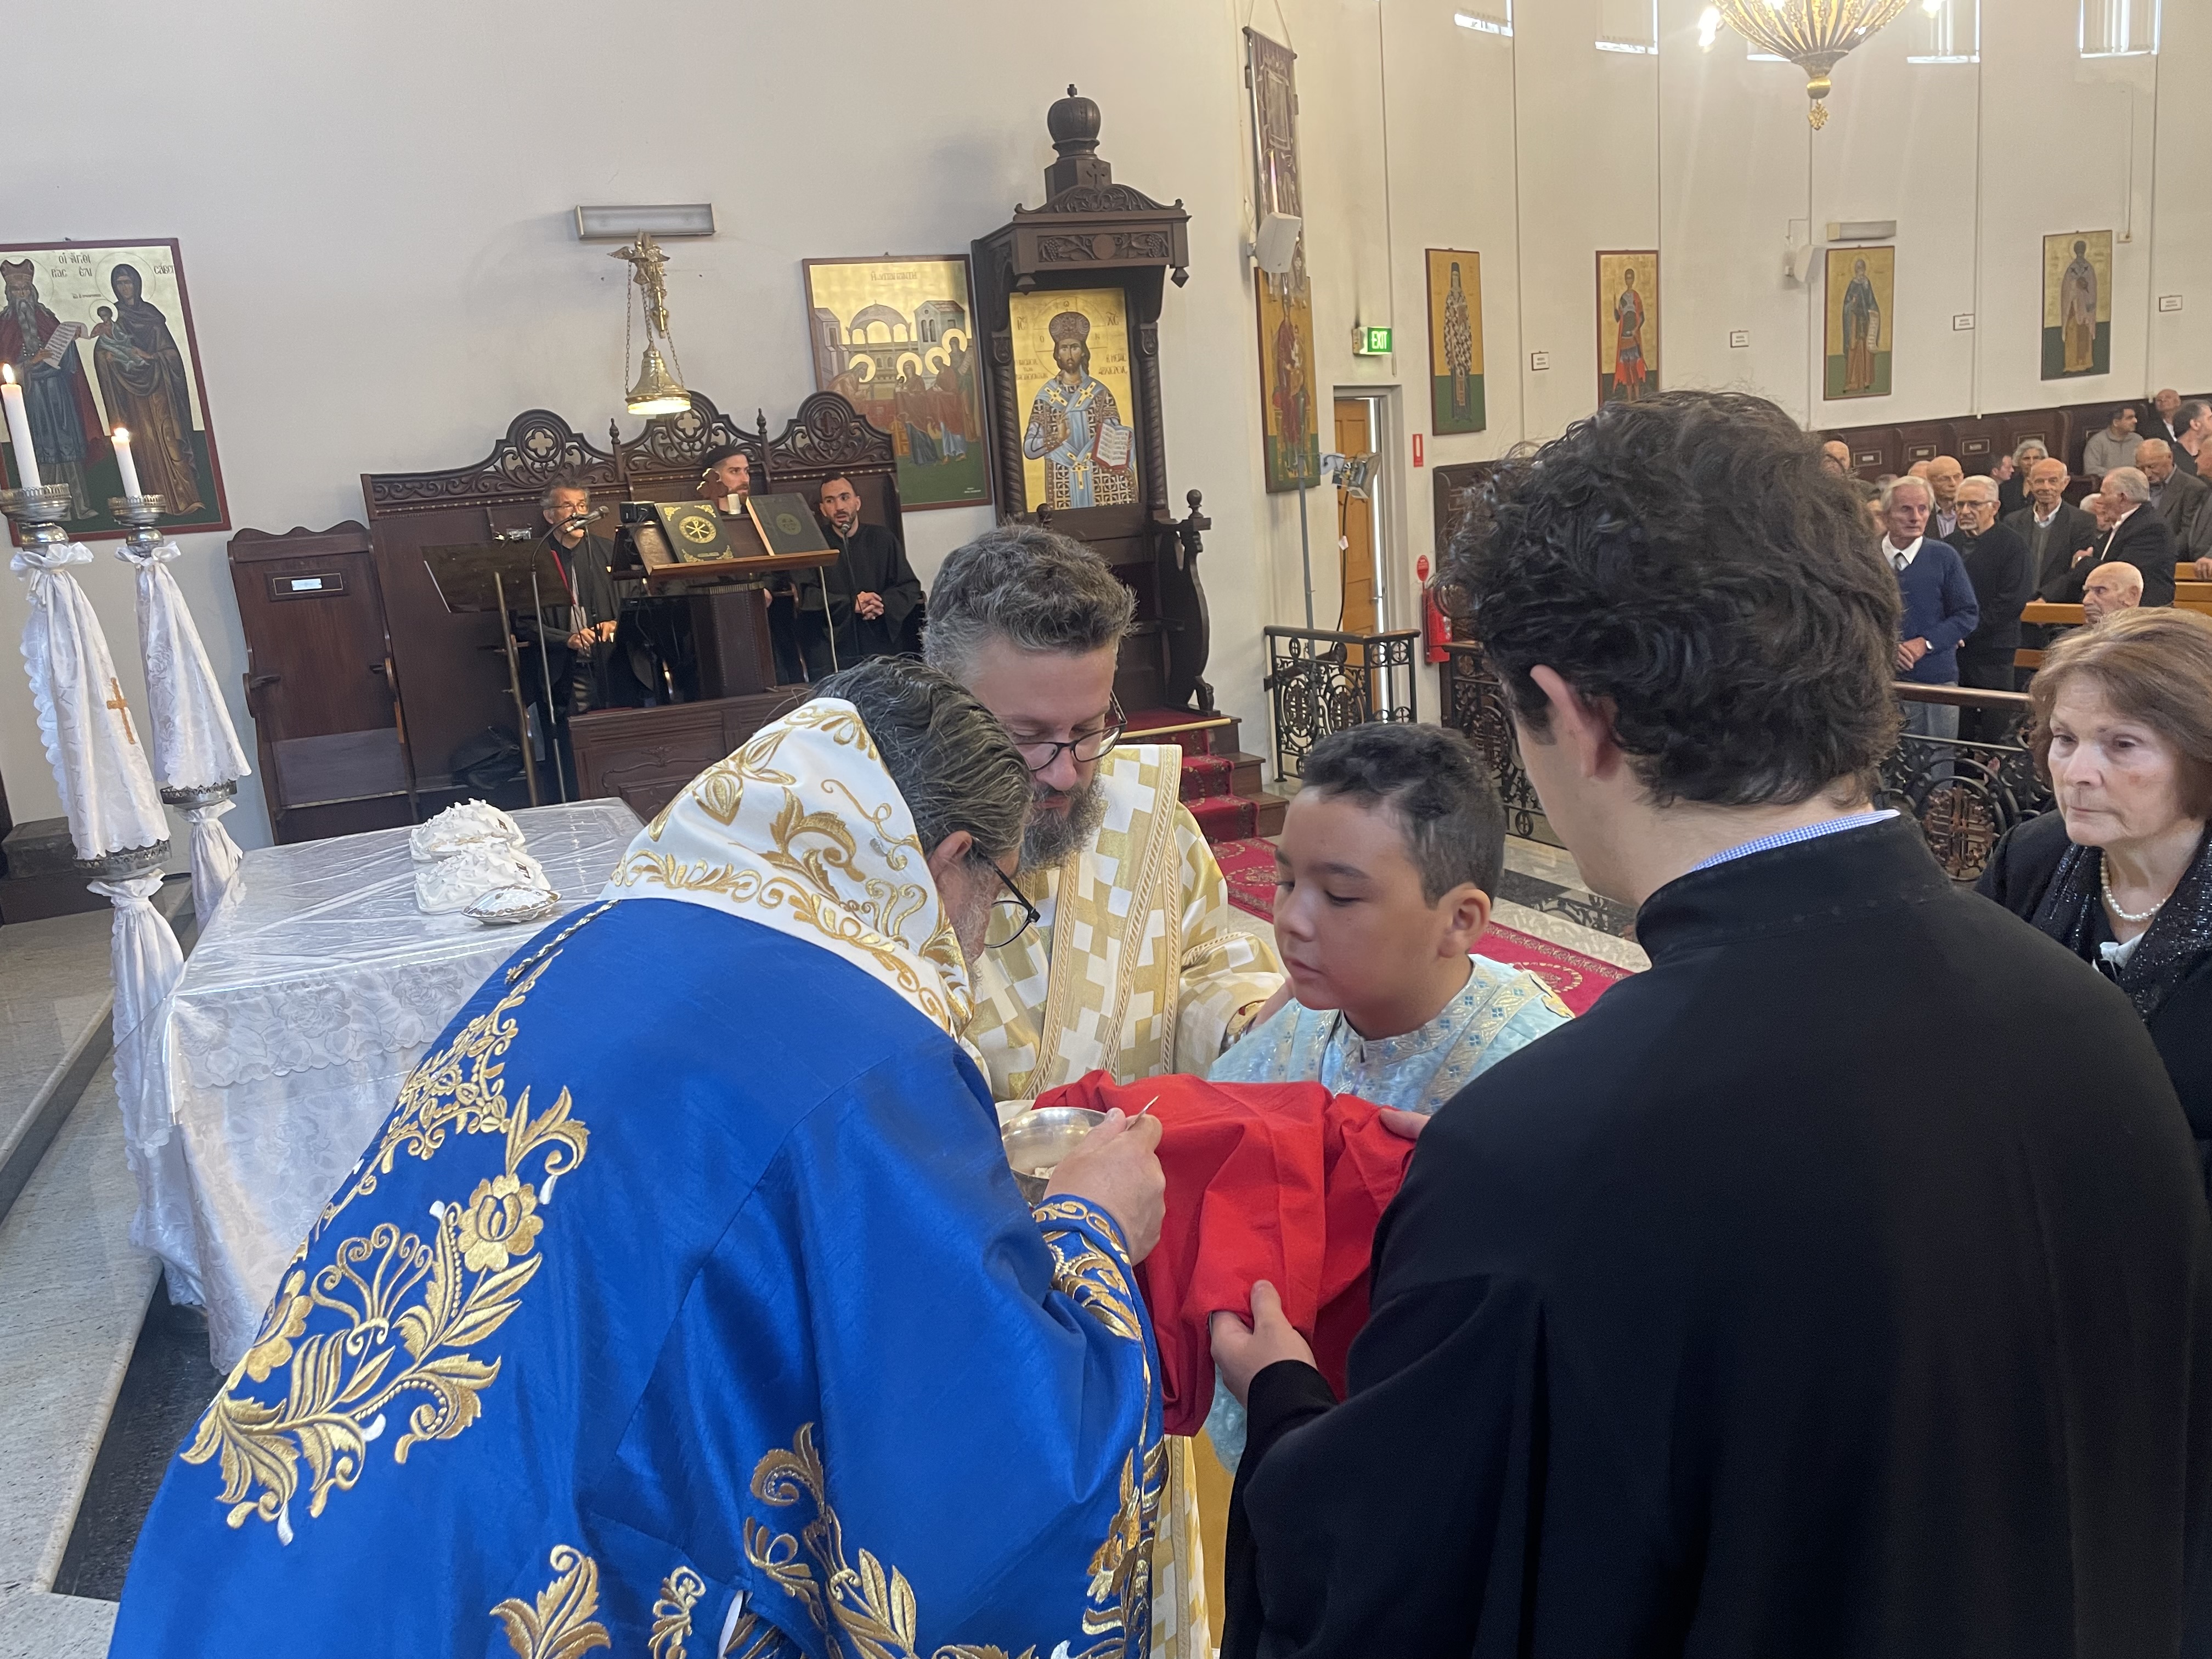 Ο Επίσκοπος Σωζοπόλεως στην Ενορία Αγίου Αθανασίου στο Springvale της Μελβούρνης